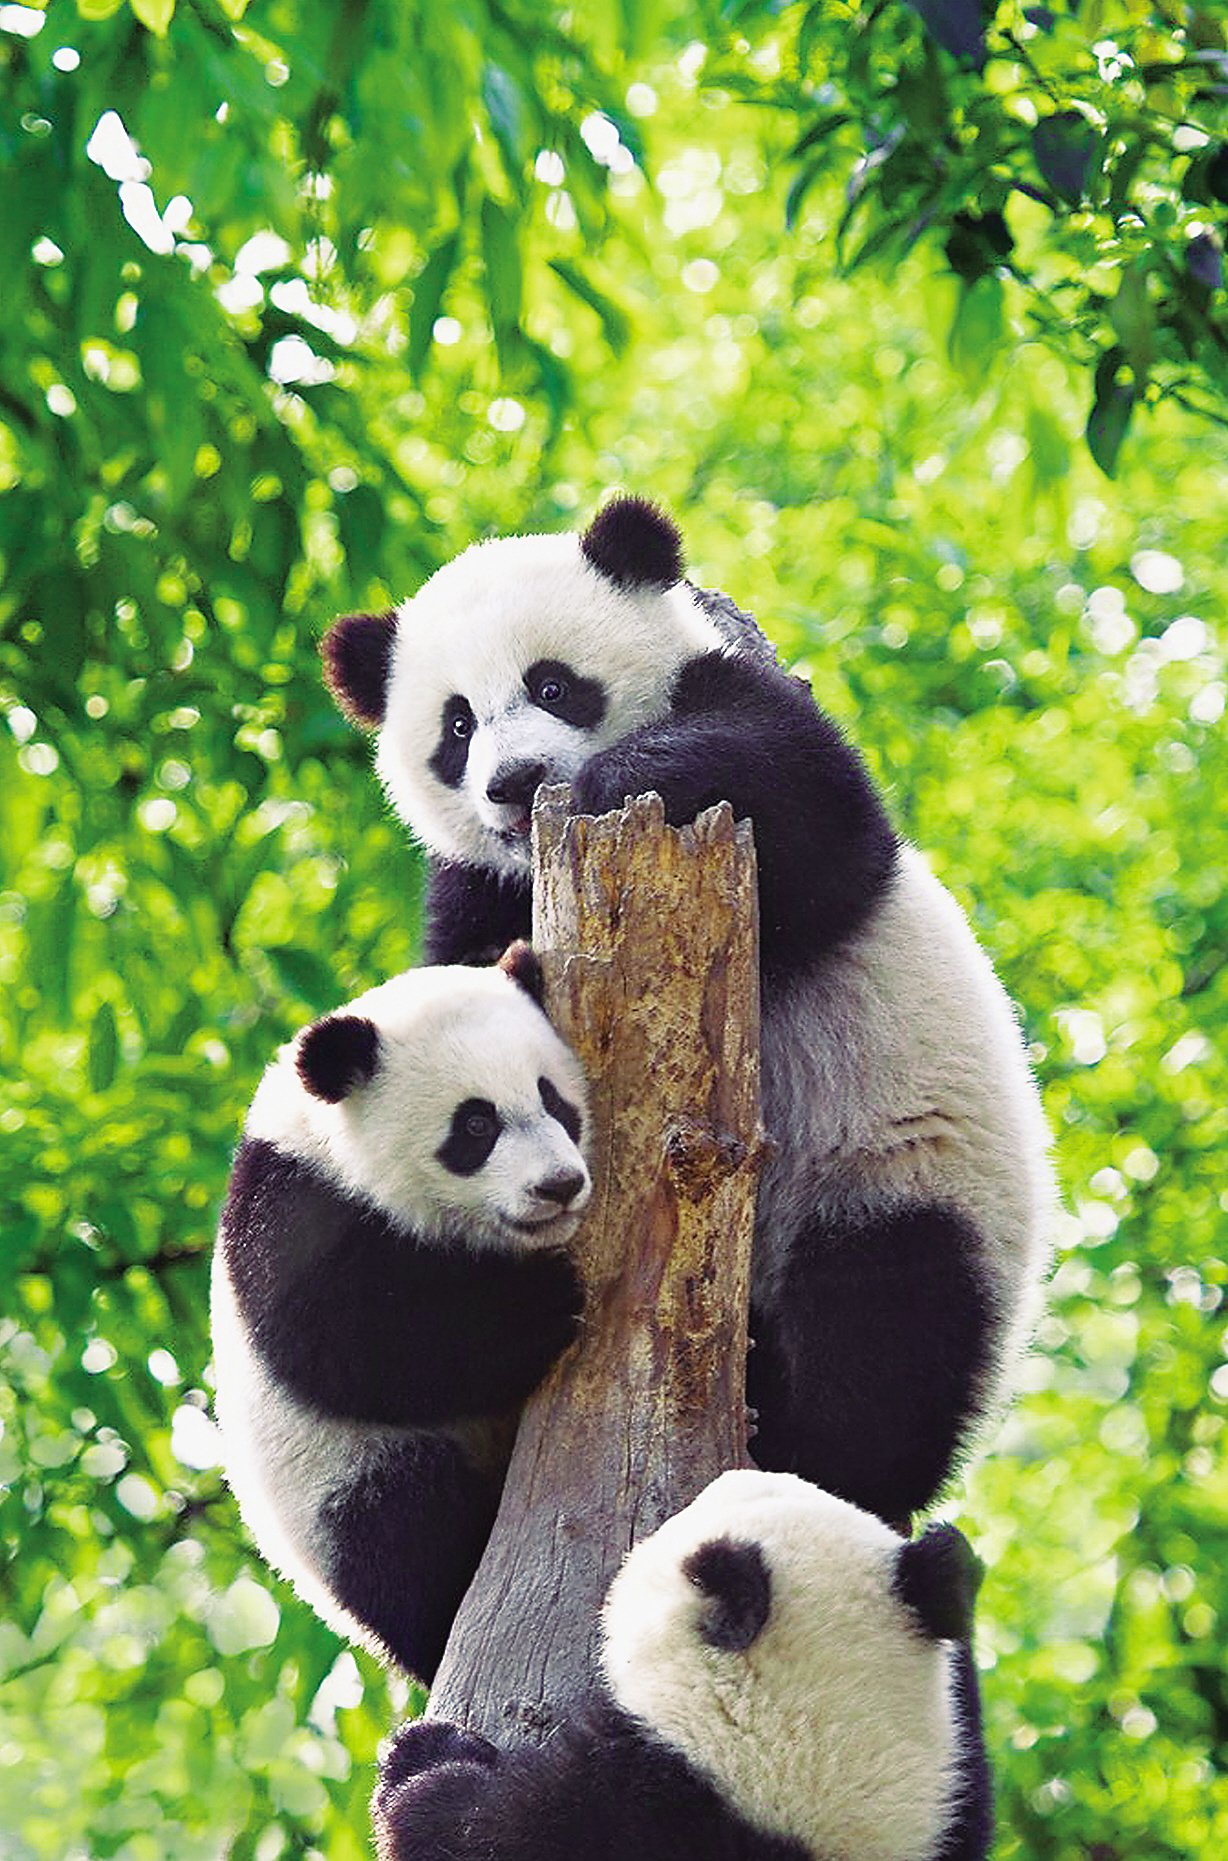 熊猫香烟多少一盒绿色图片